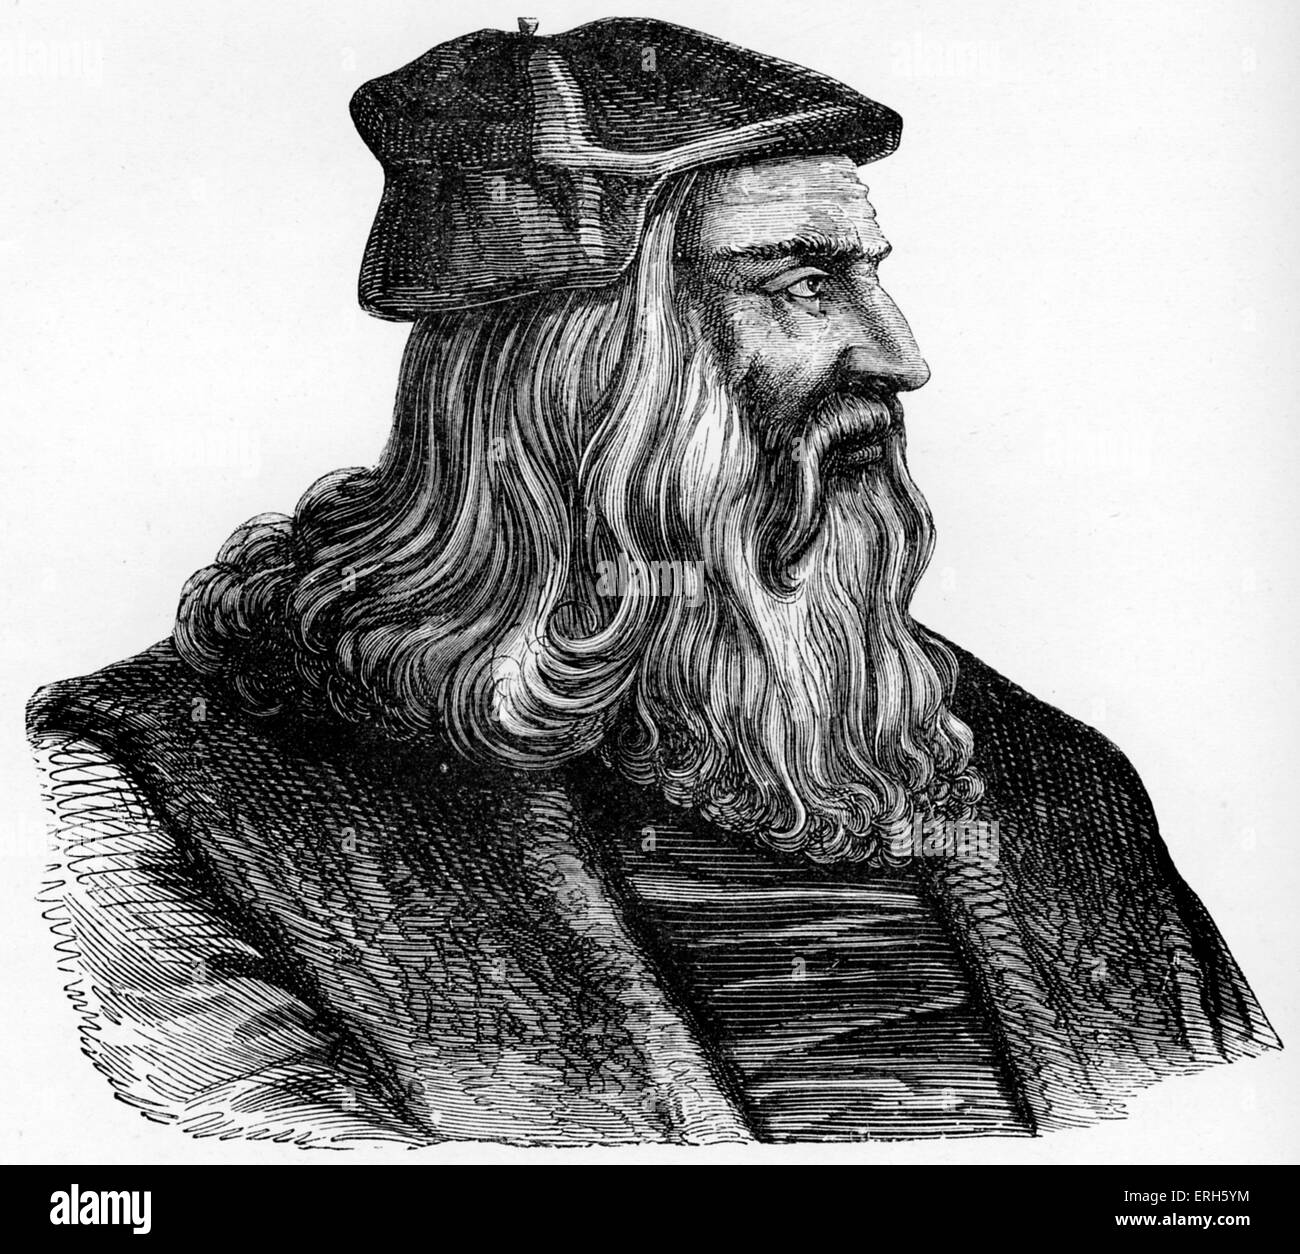 Leonardo da Vinci - Renaissance Italienne peintre, sculpteur, écrivain, scientifique, architecte et ingénieur. Gravure de Venise Banque D'Images